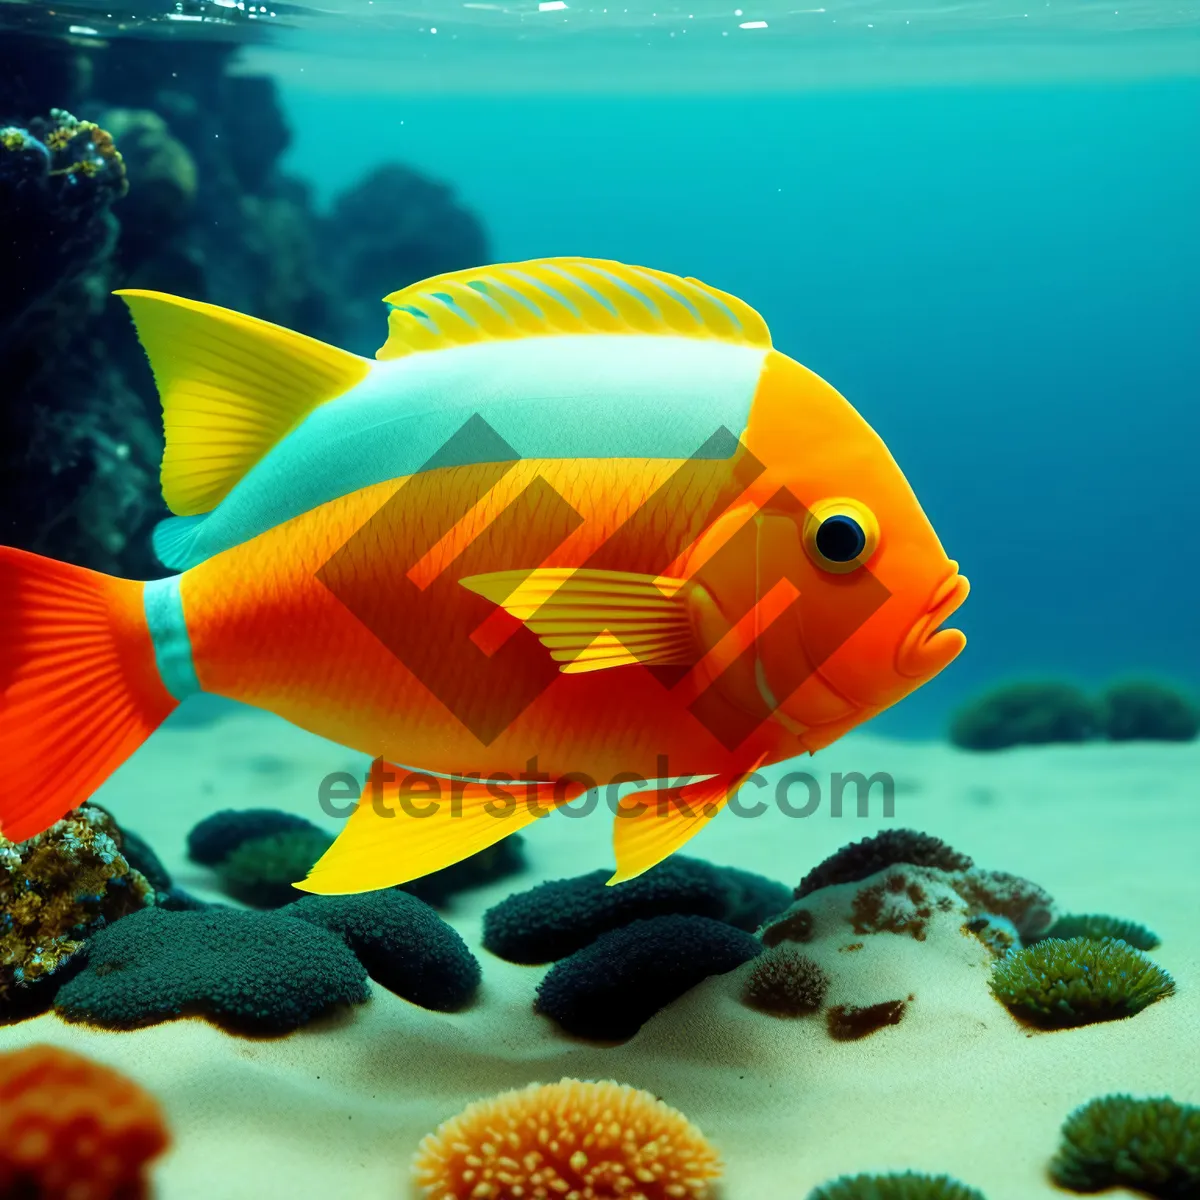 Picture of Colorful Reef Fish in Stunning Underwater Aquarium